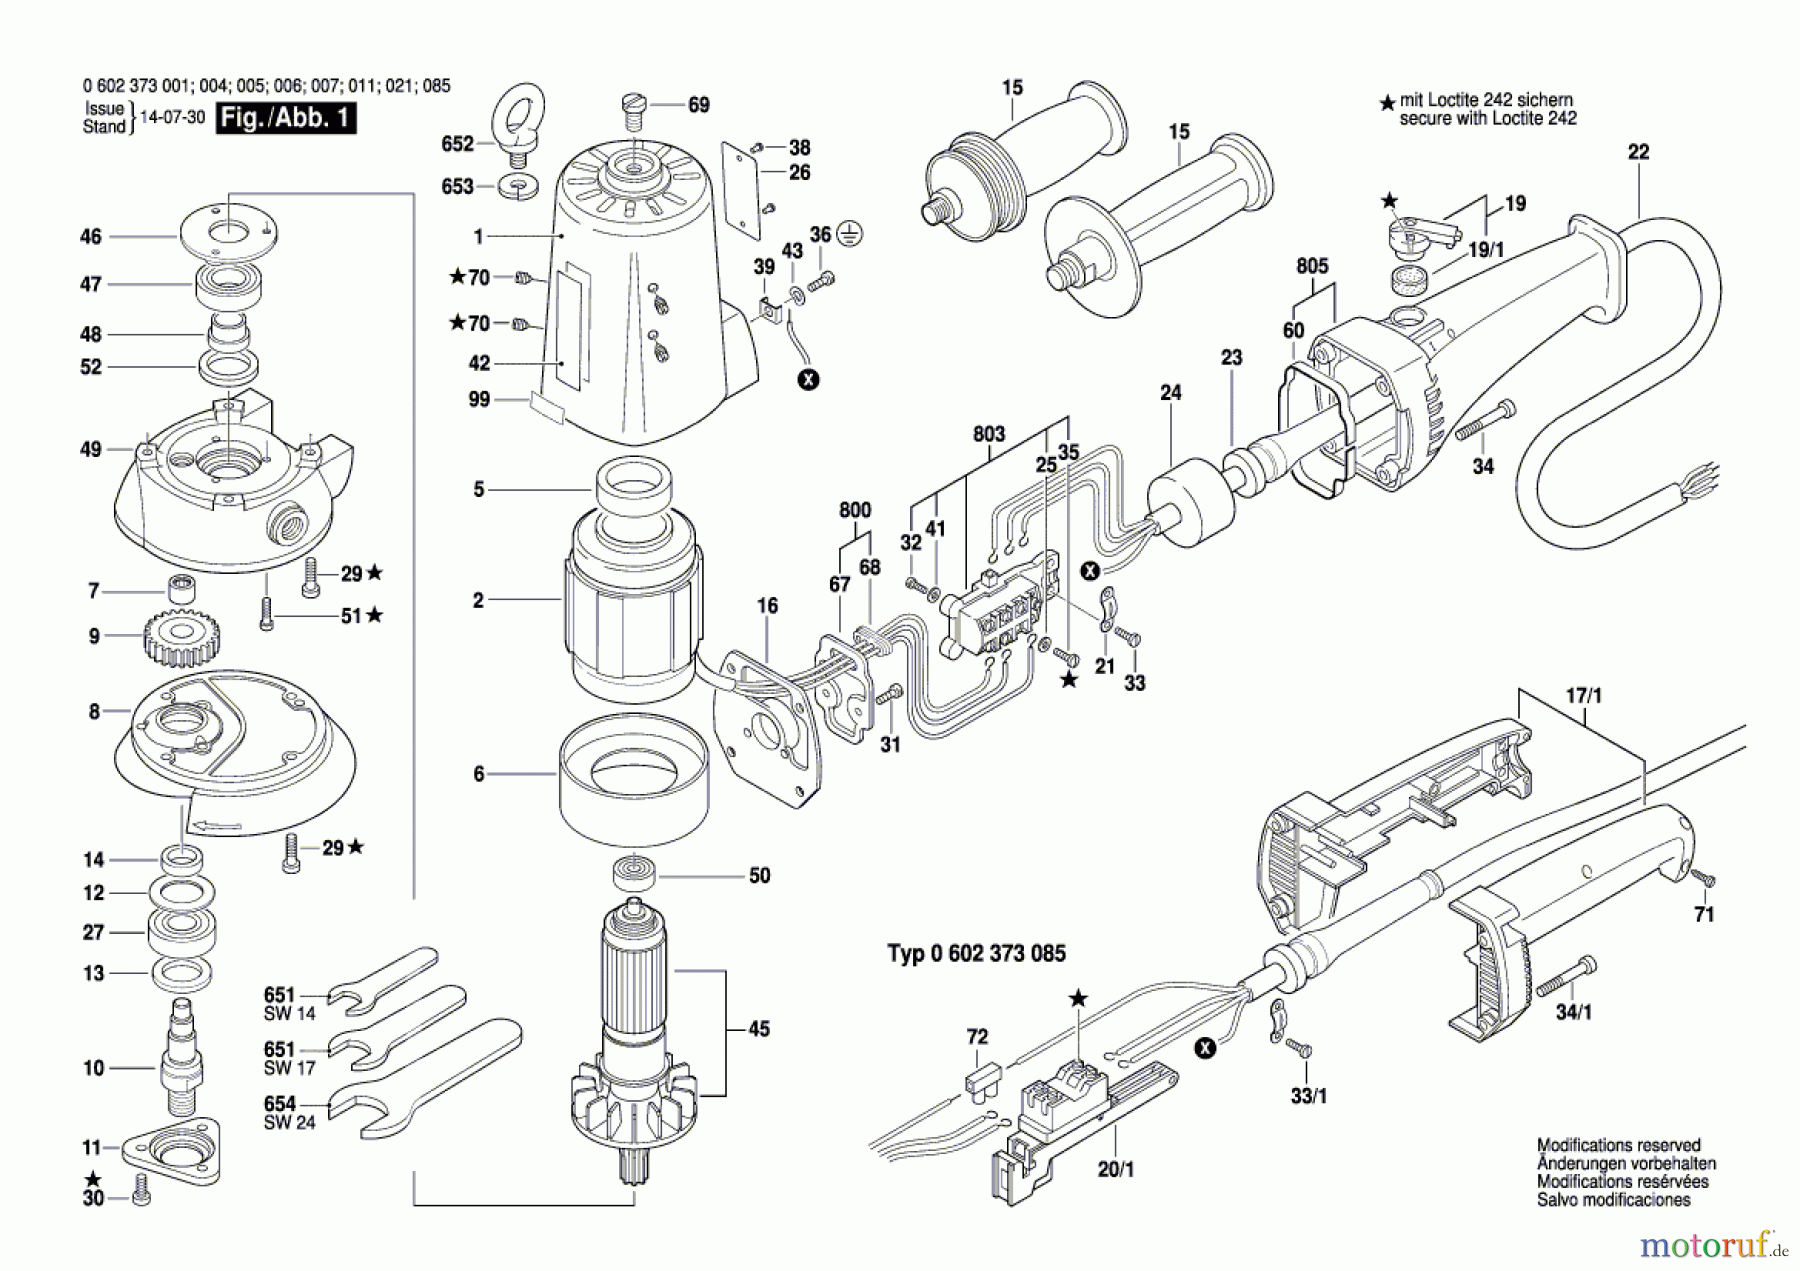  Bosch Werkzeug Hf-Tellerschleifer ---- Seite 1